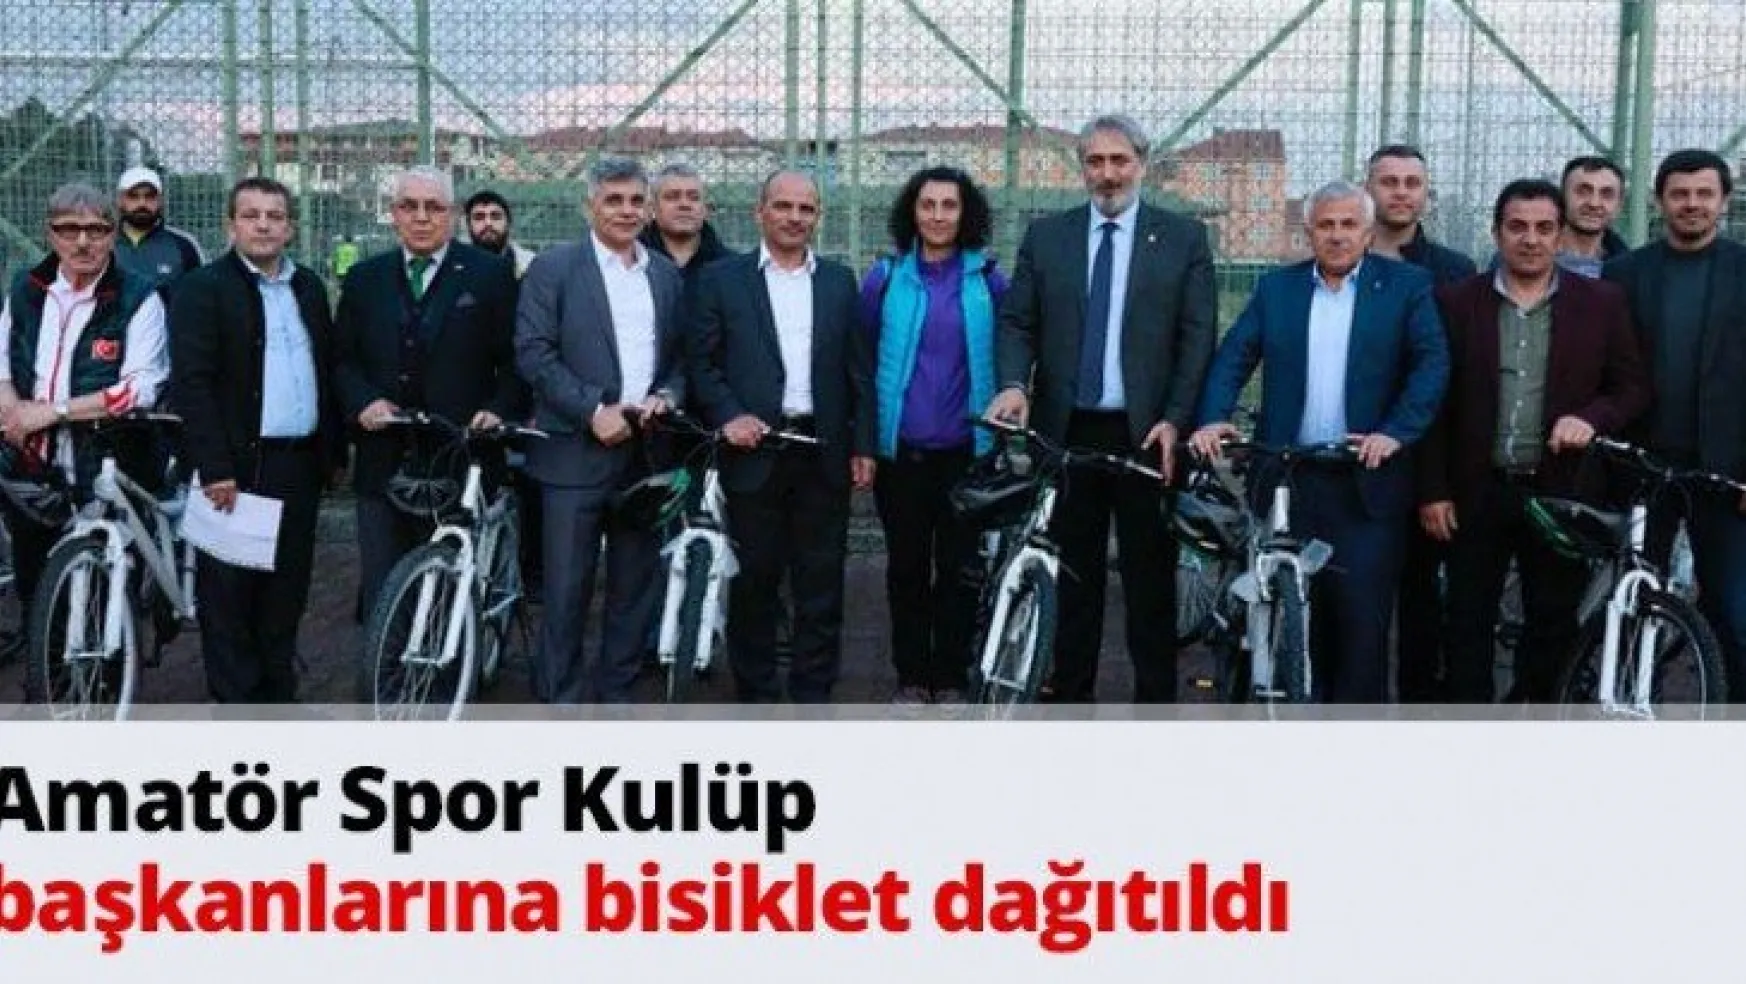 Amatör Spor Kulüp başkanlarına bisiklet dağıtıldı